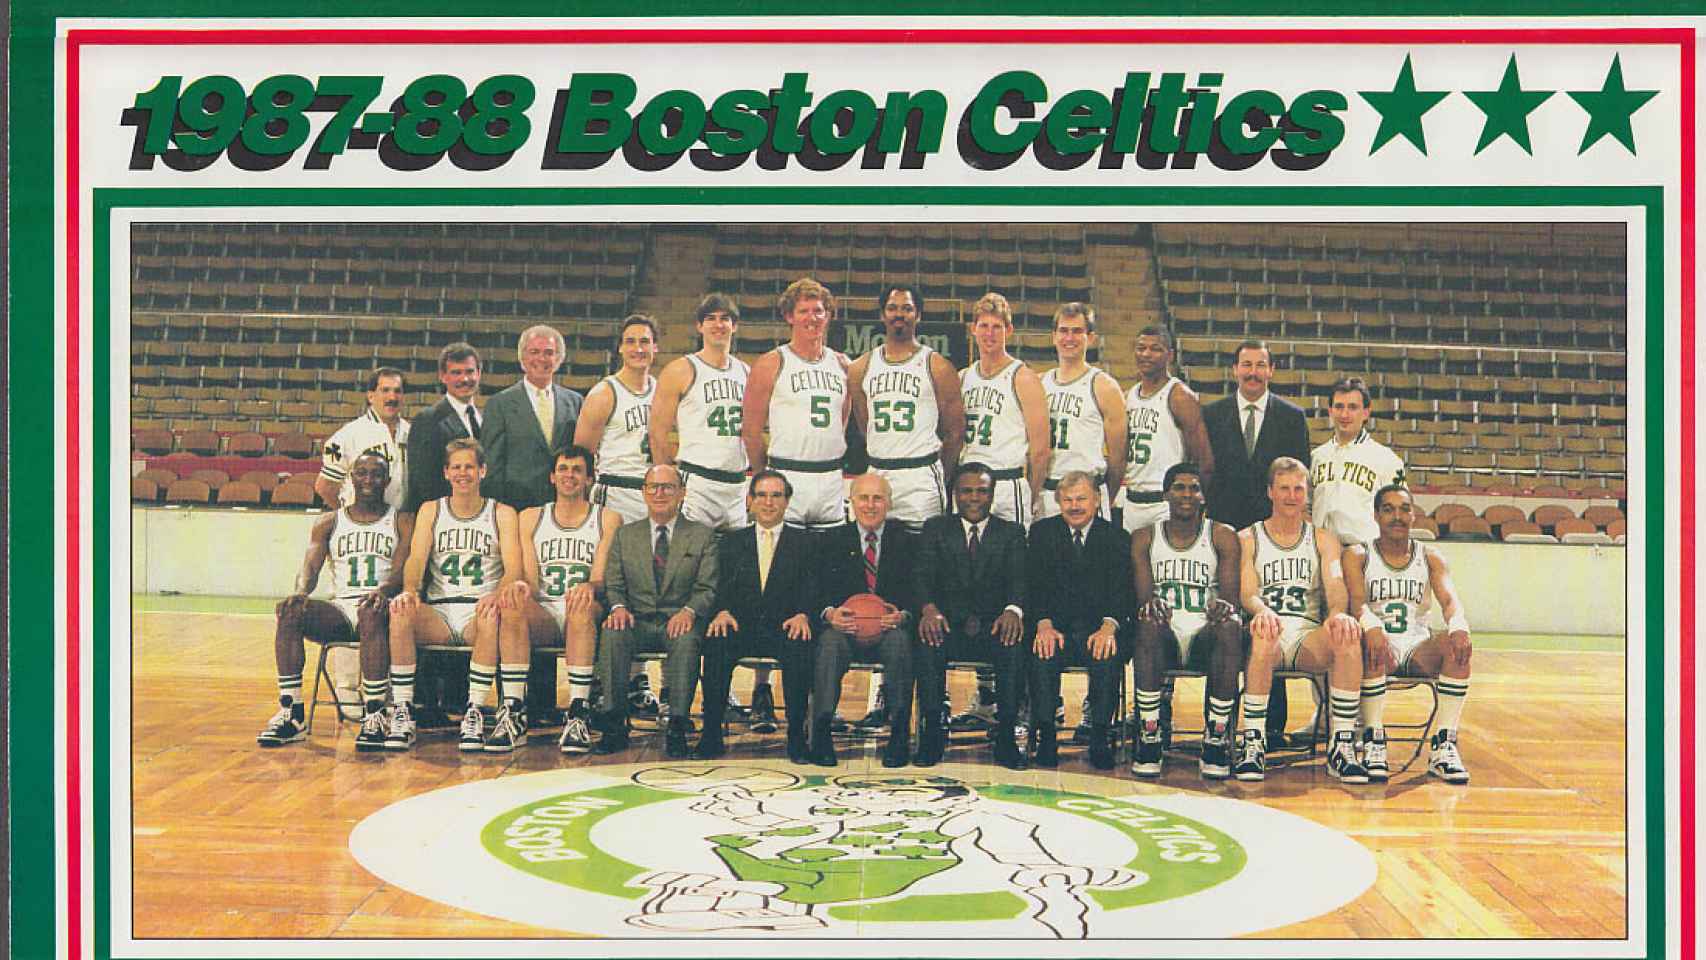 Plantilla de los Boston Celtics en la temporada 1987/1988.